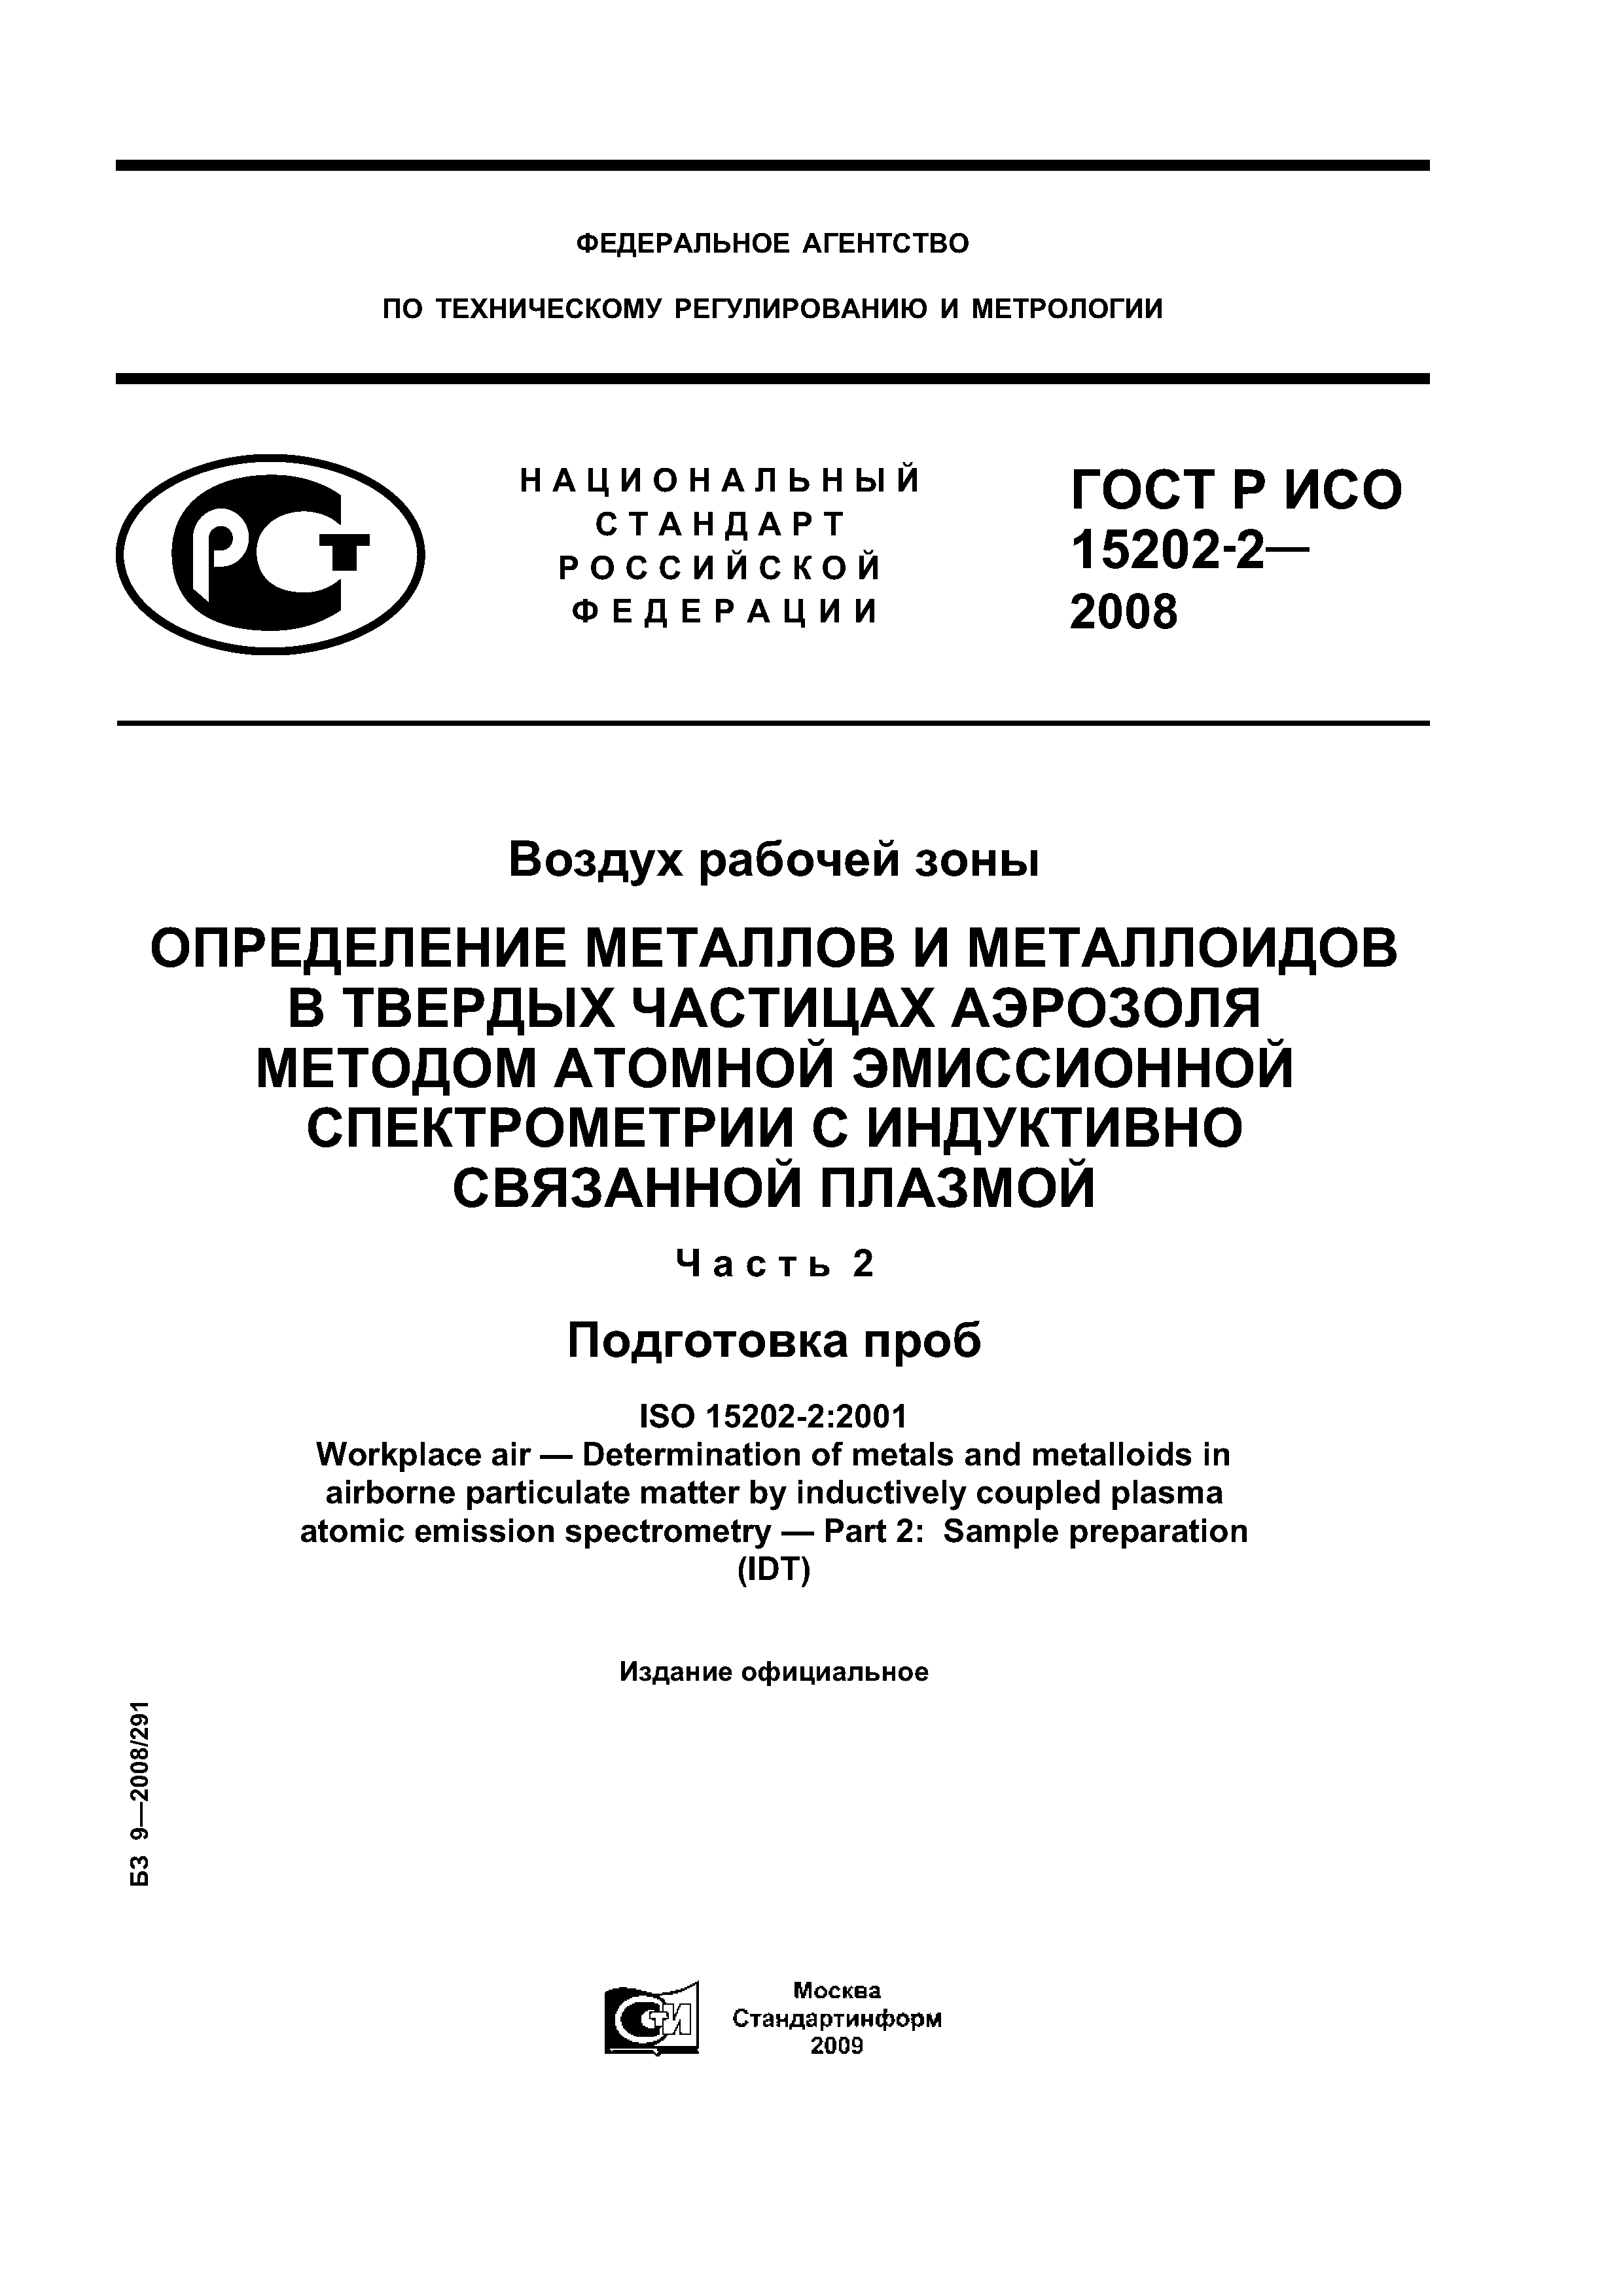 ГОСТ Р ИСО 15202-2-2008